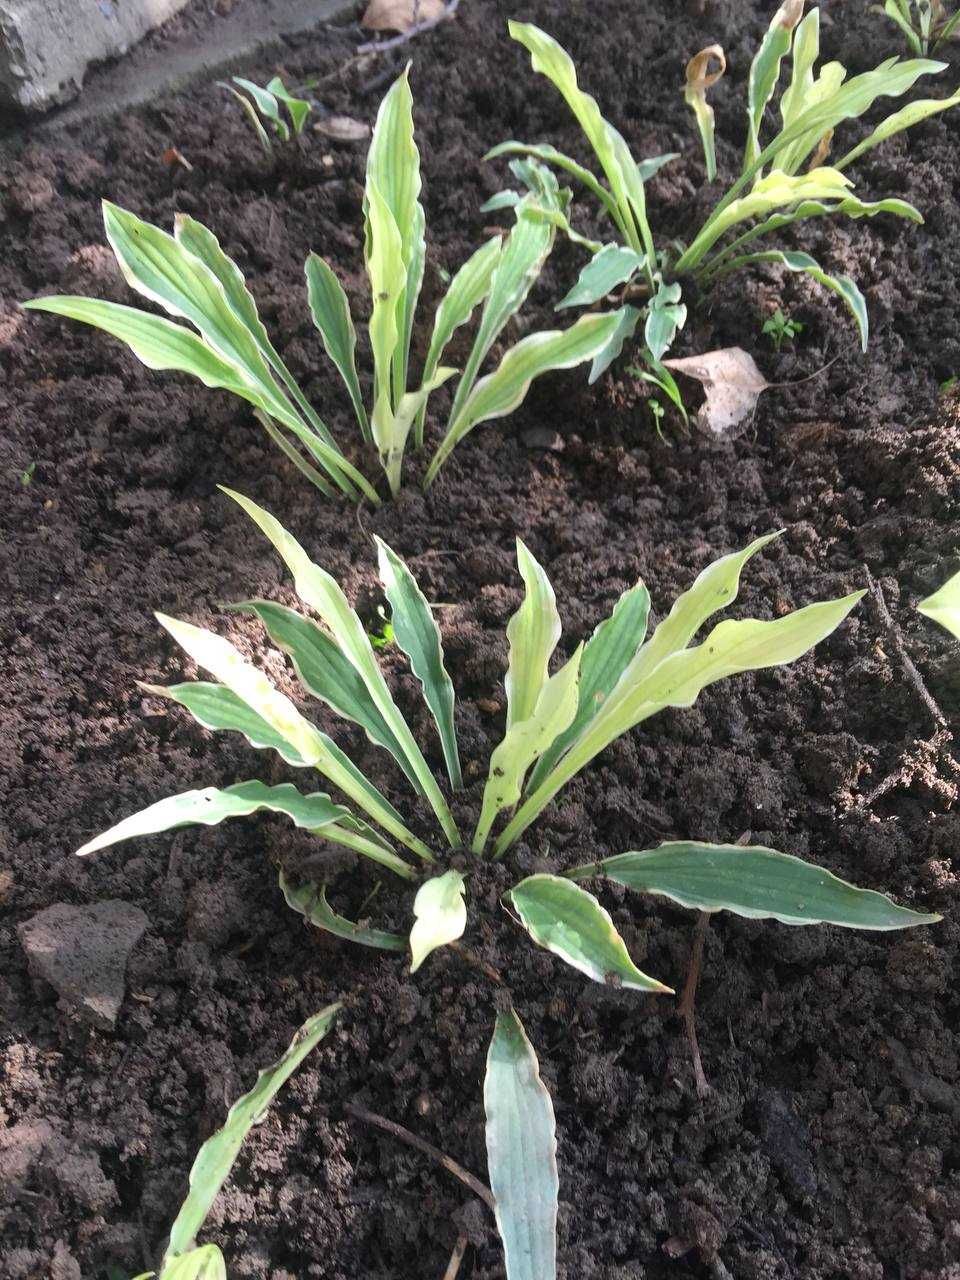 хоста или функия -многолетнее растение с красивыми листьями